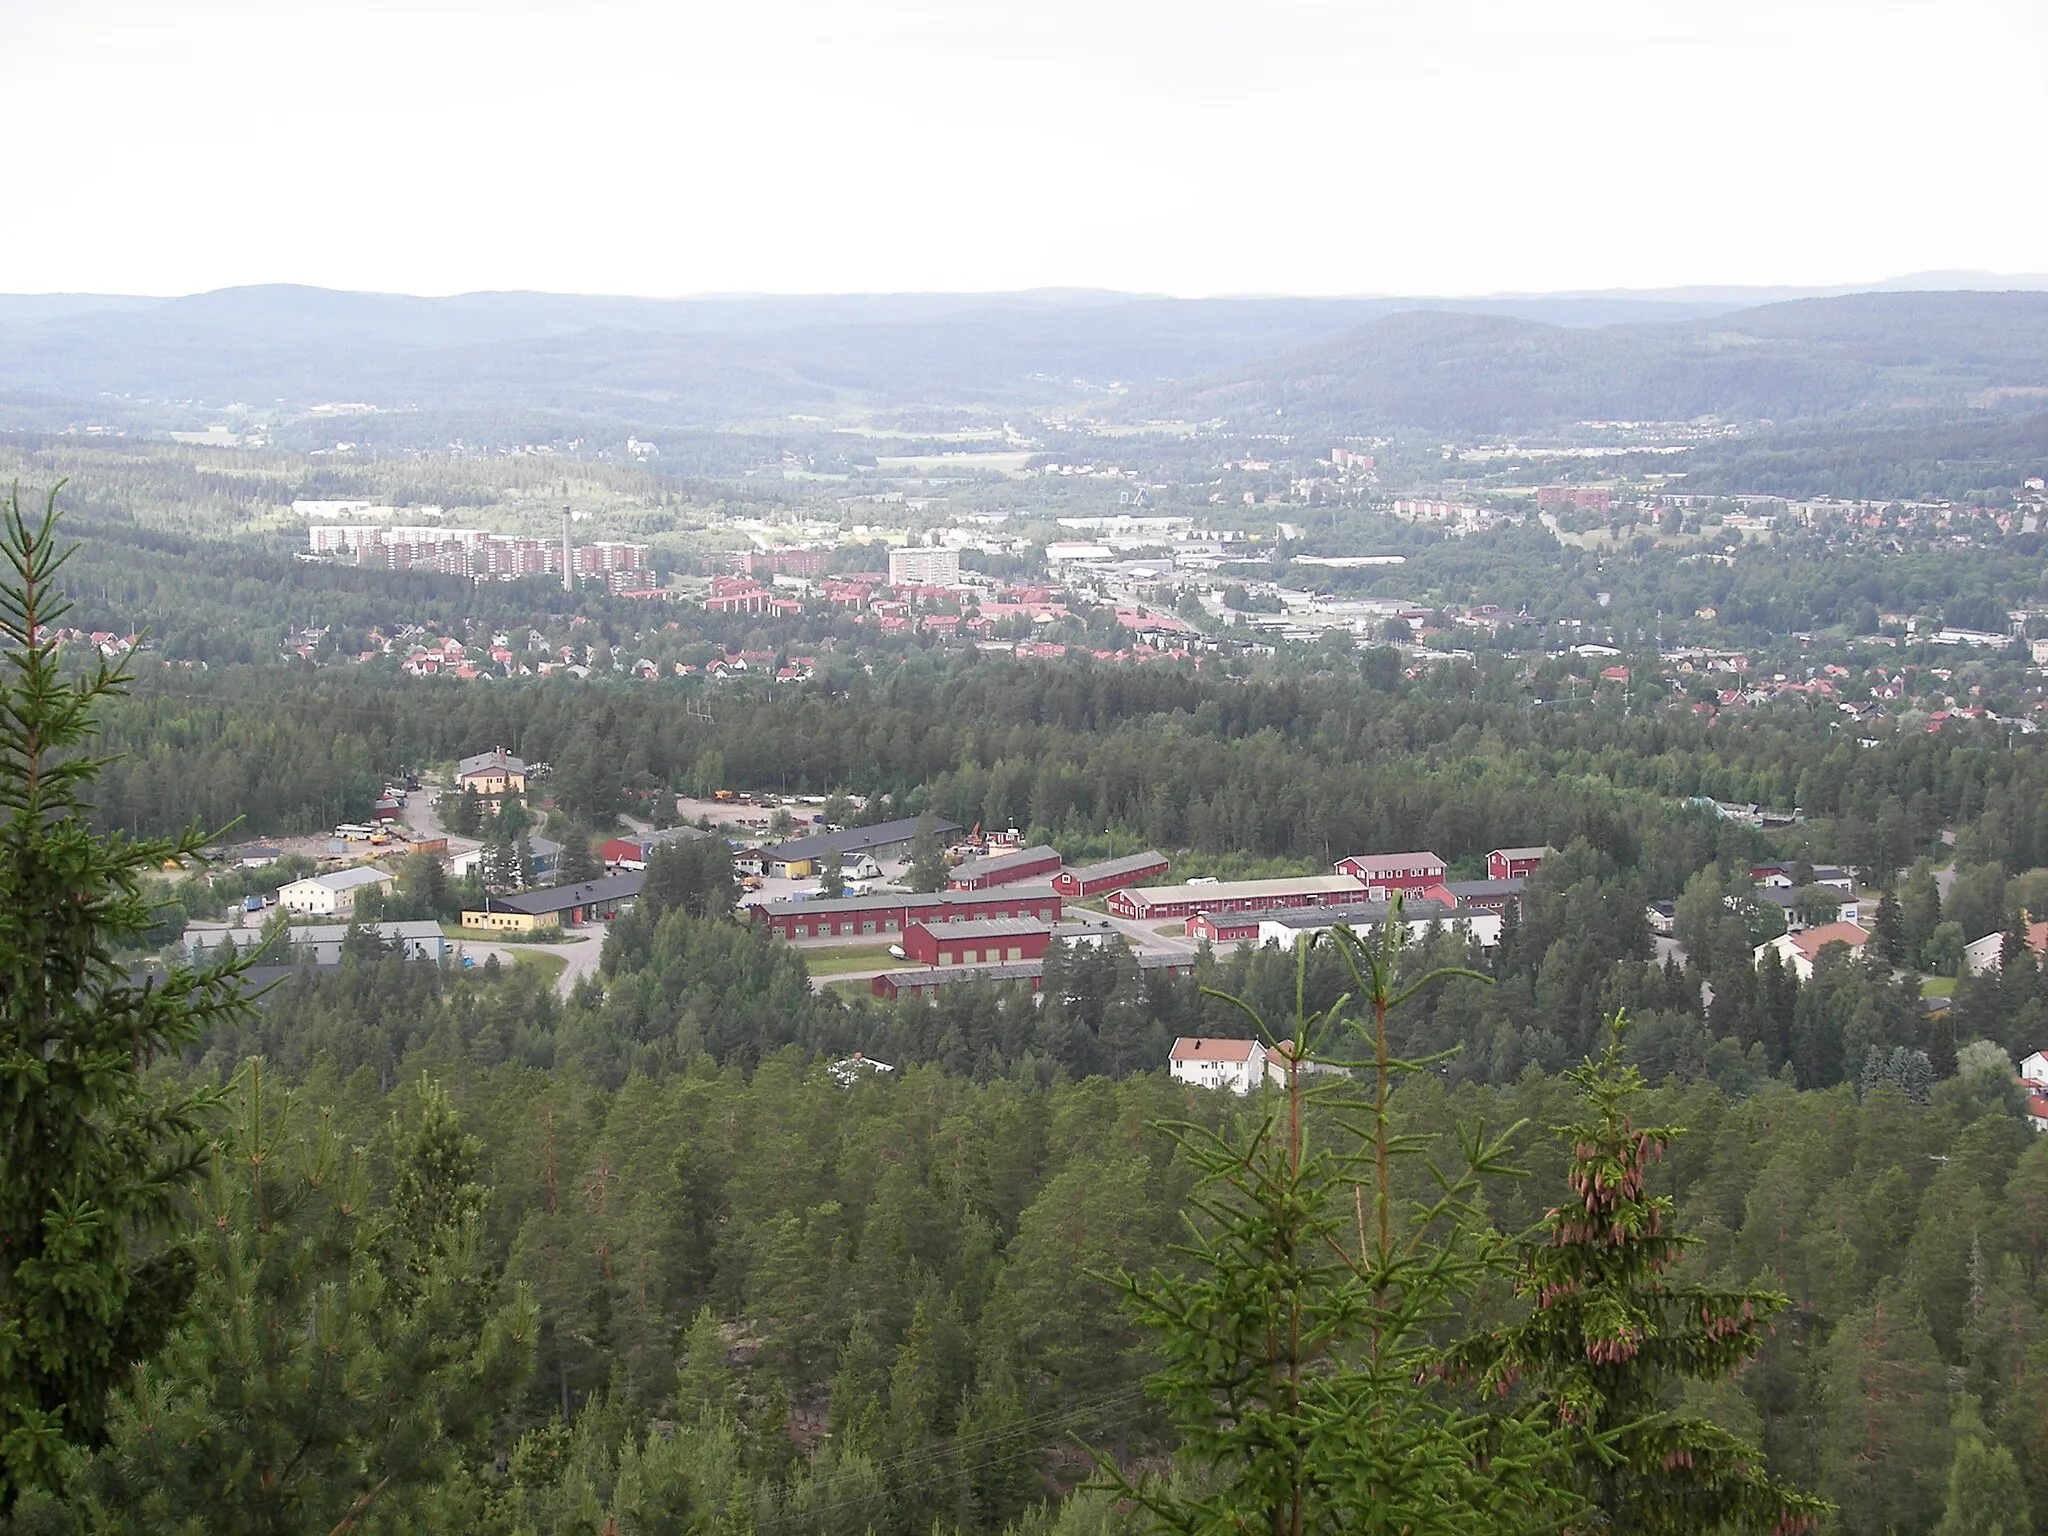 Image of Sundsvall